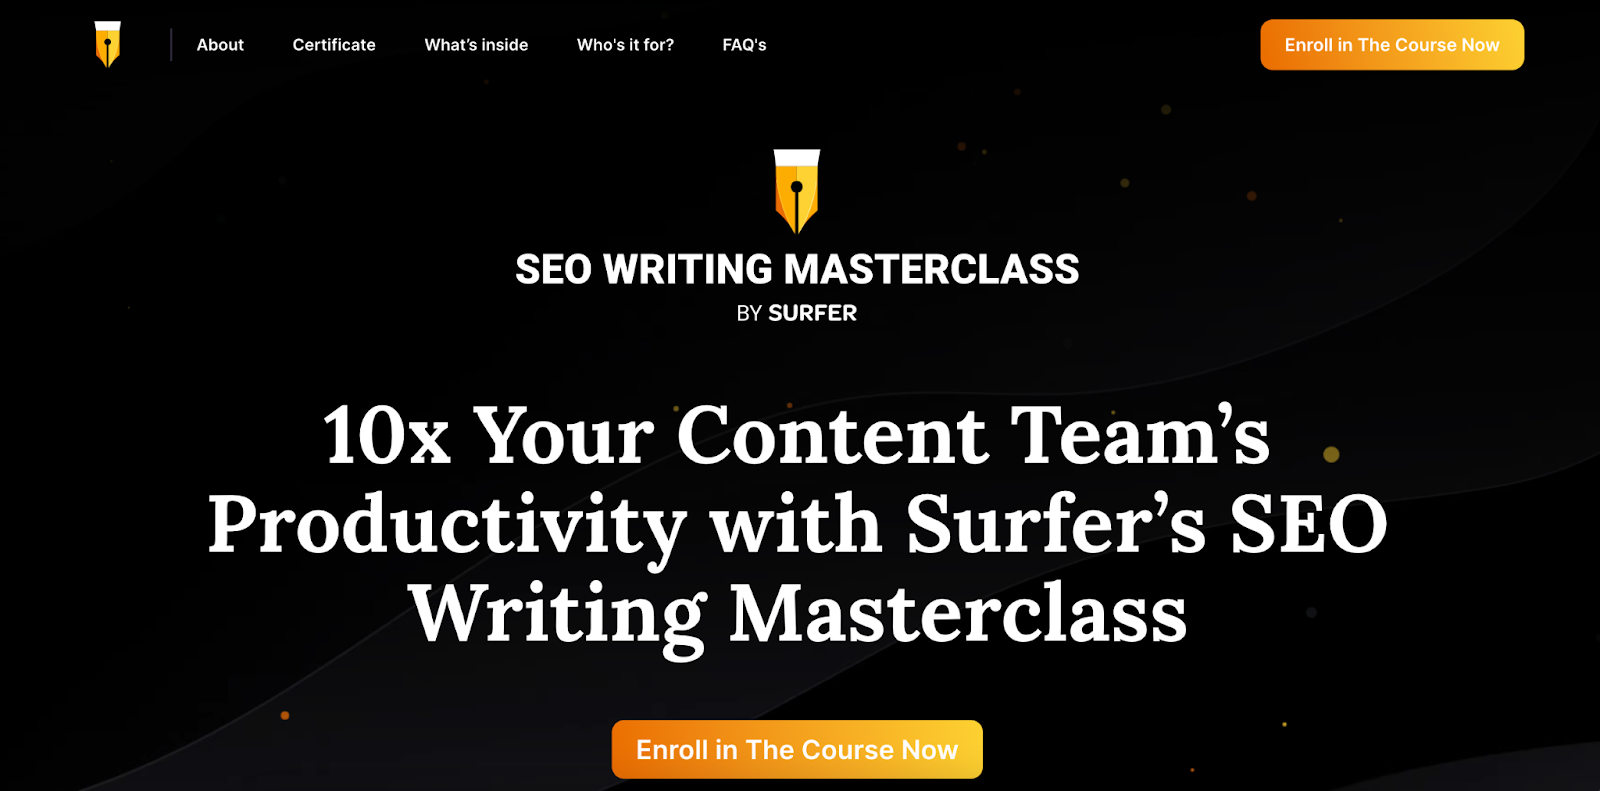 surfer seo writing masterclass